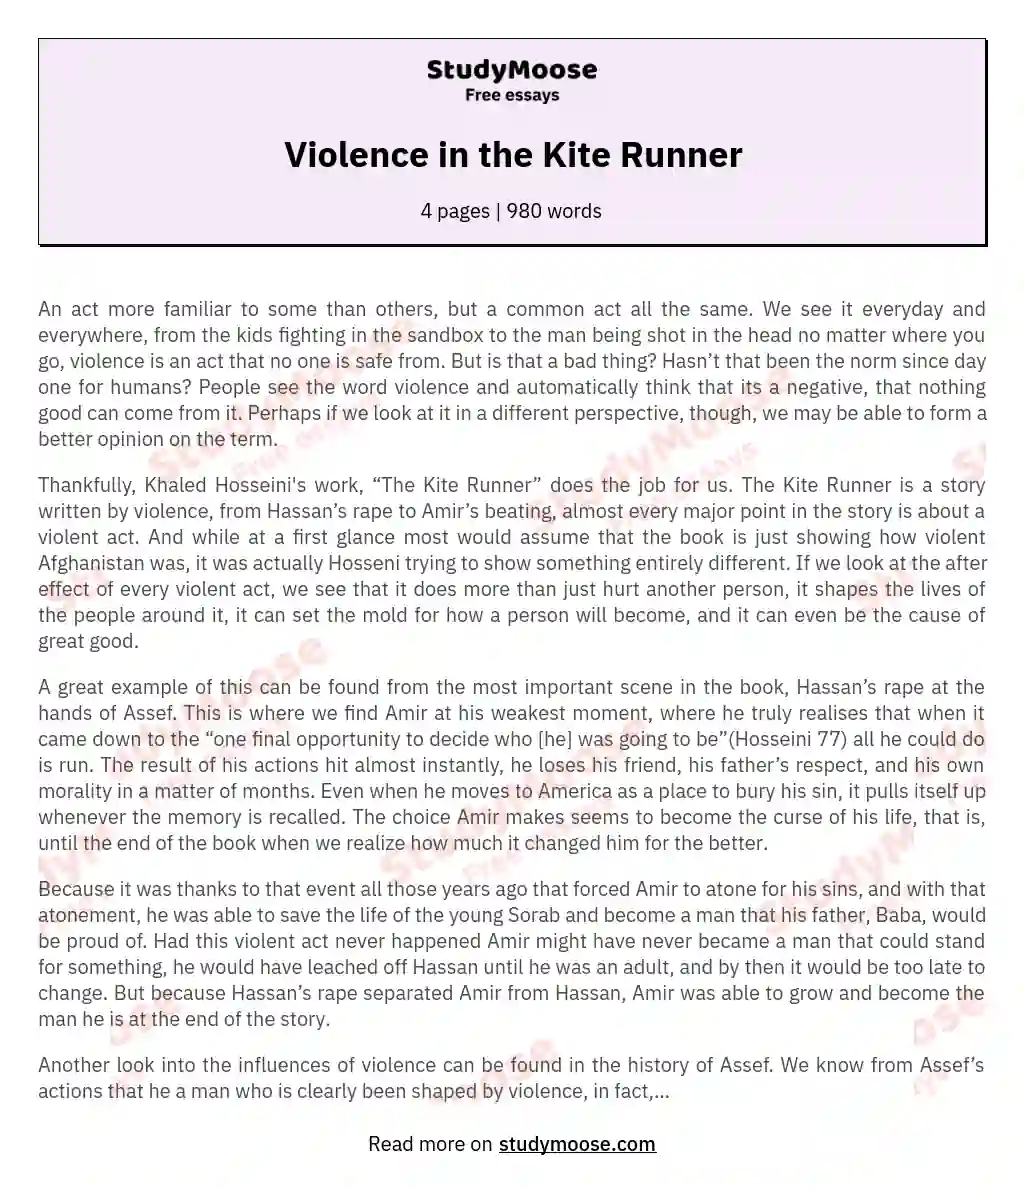 Violence in the Kite Runner essay